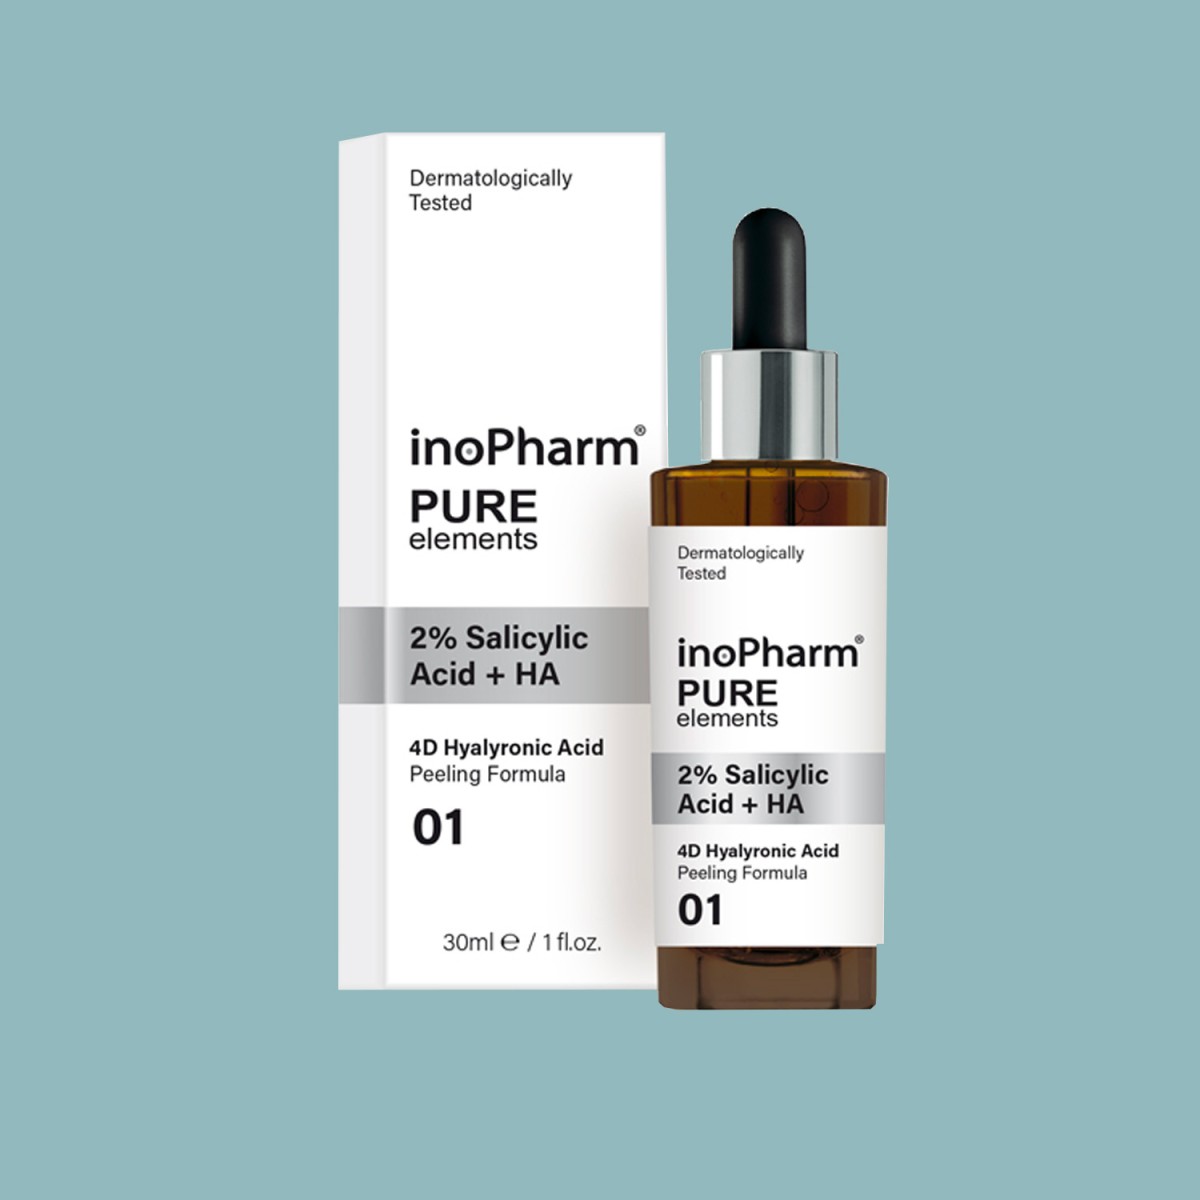 Serums - Cosmética Natural al mejor precio: InoPharm Pure Elements 2 % Salicylic + HA Serum con Salicílico y 4 tipos de Hilaurónico de InoPharm en Skin Thinks - Piel Grasa